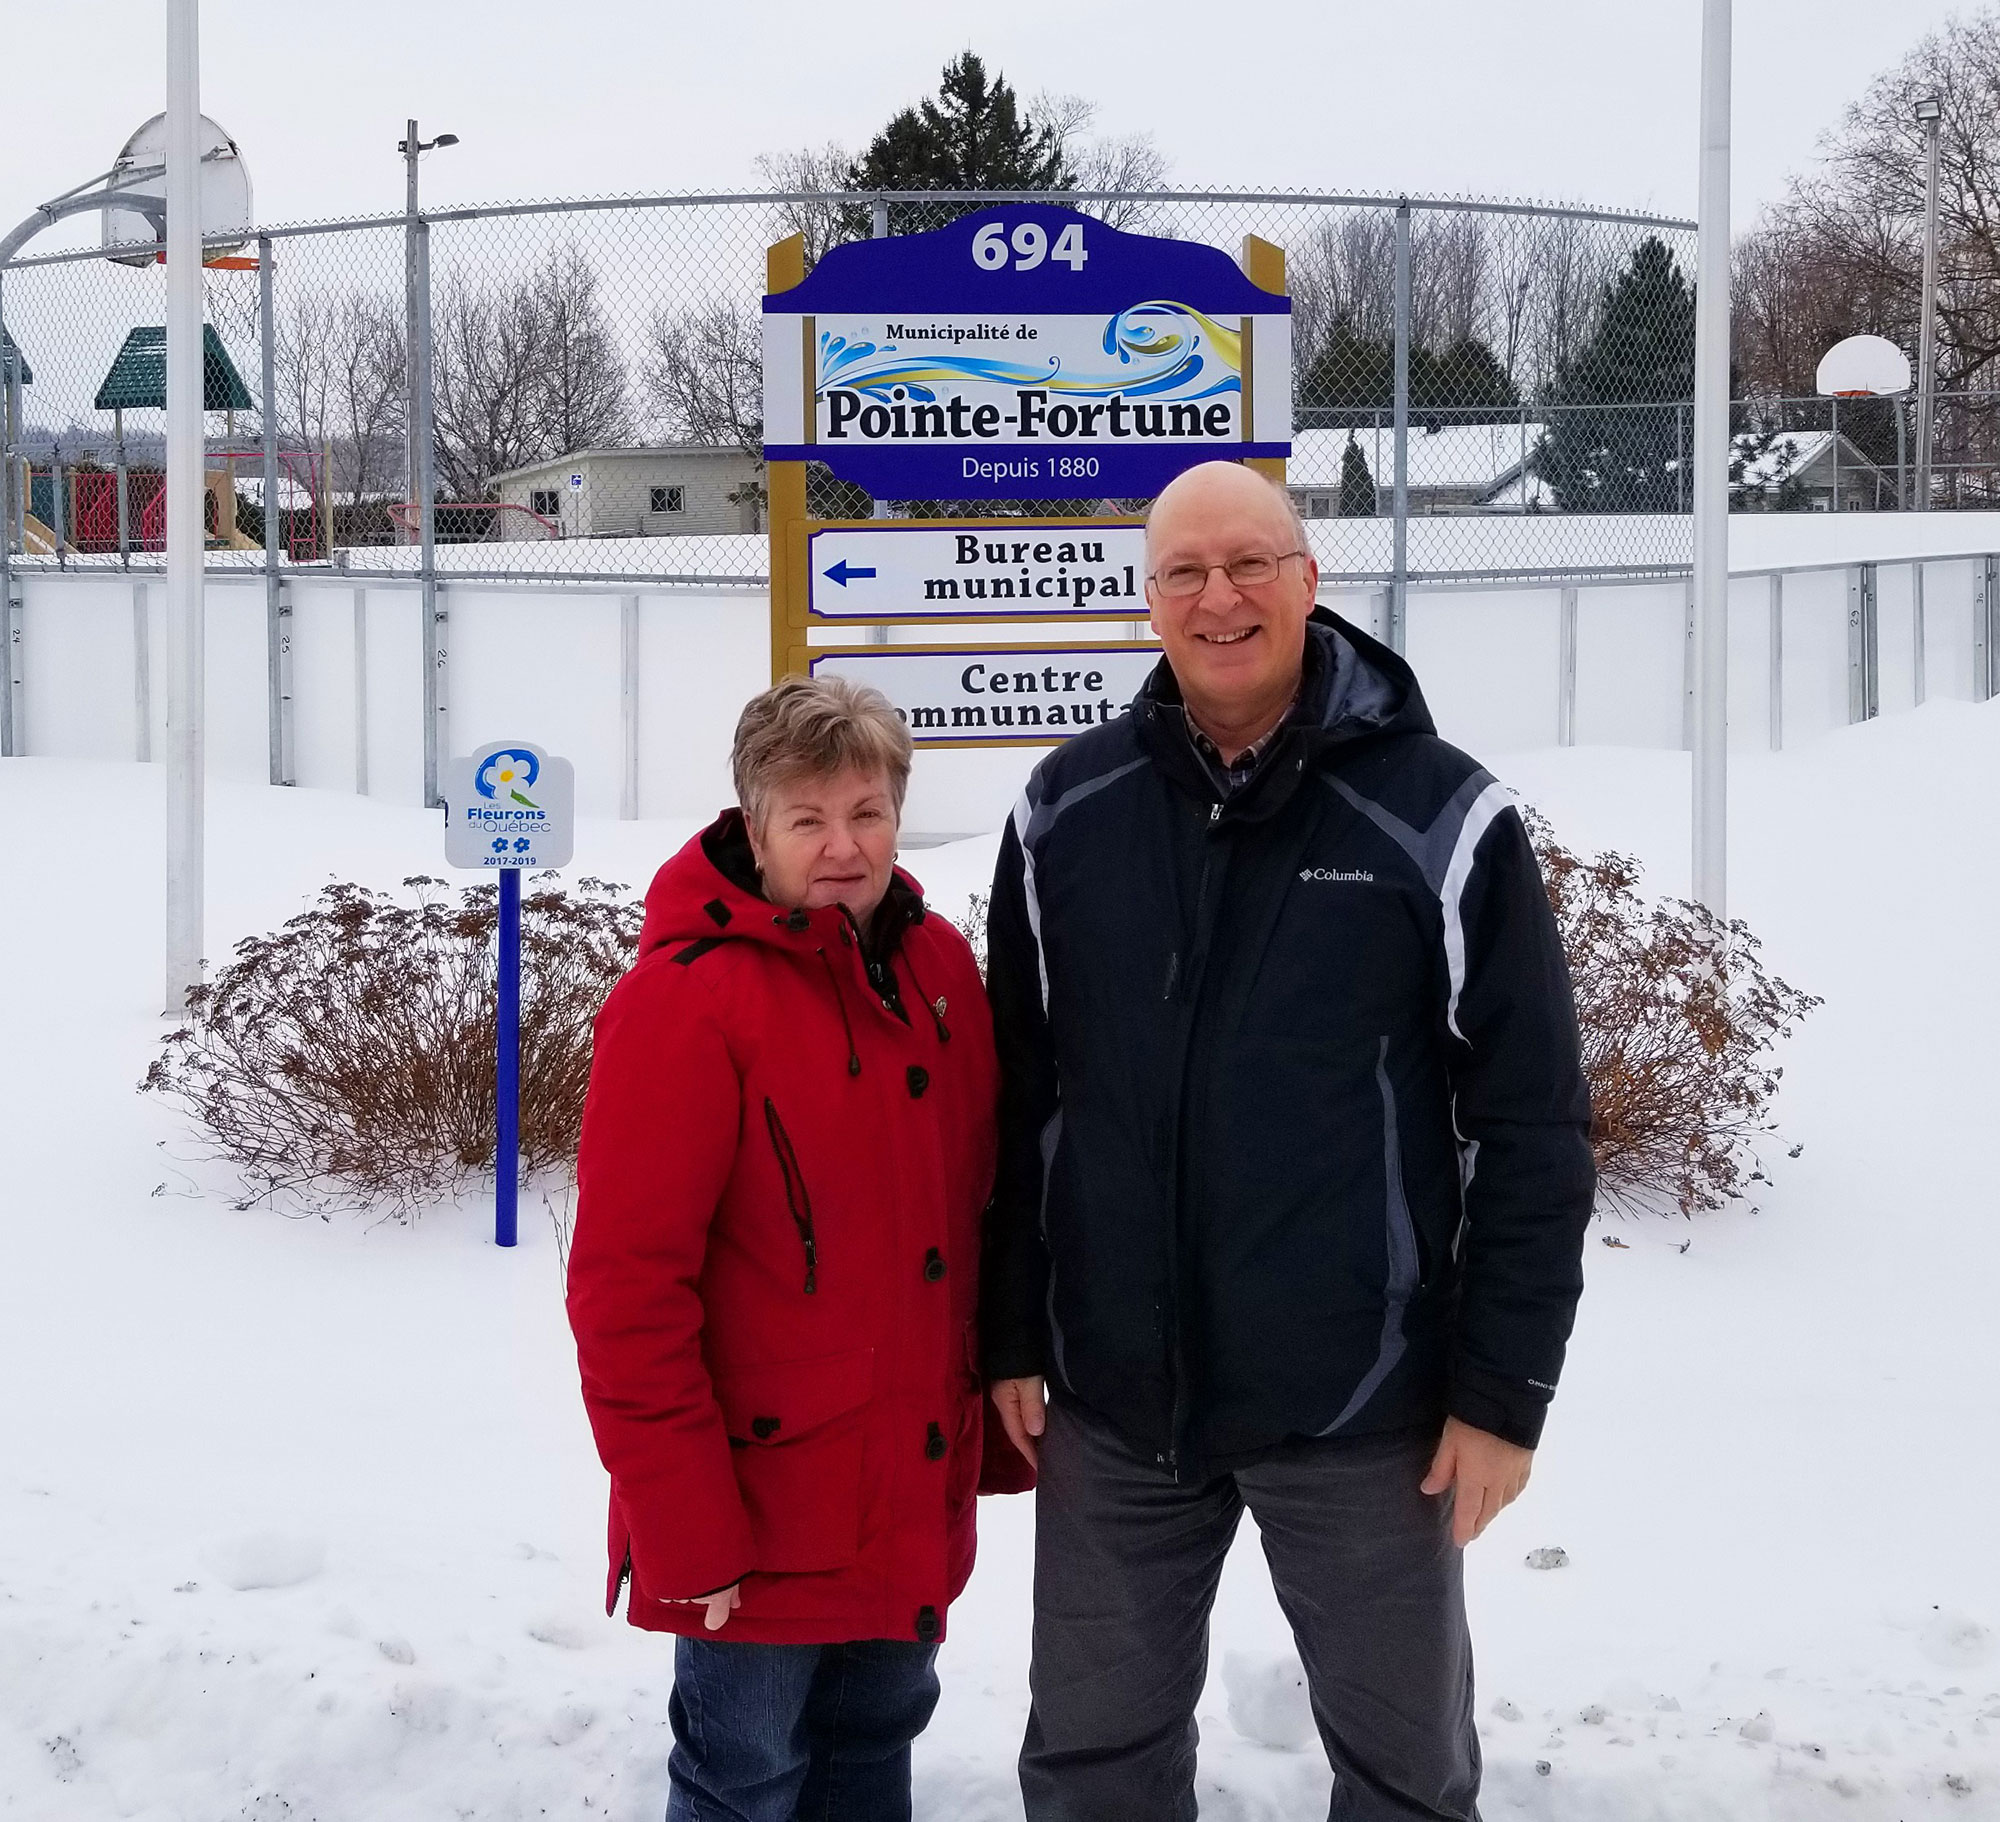 Un homme et une femme devant le panneau de la Ville de Pointe-Fortune et la patinoire extérieure.